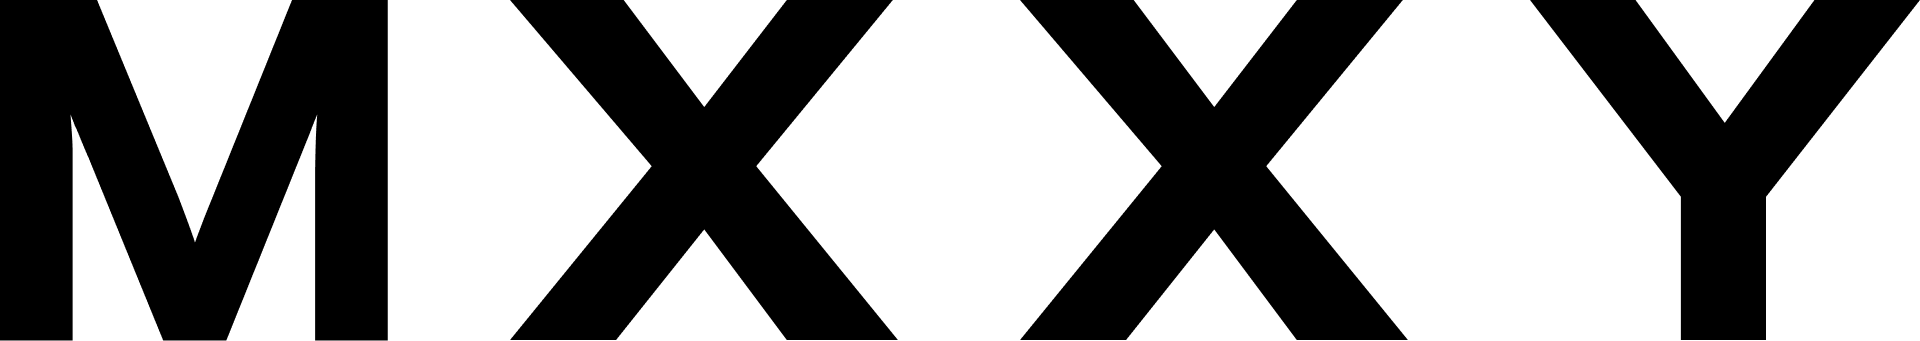 mxxy-logo-black.png